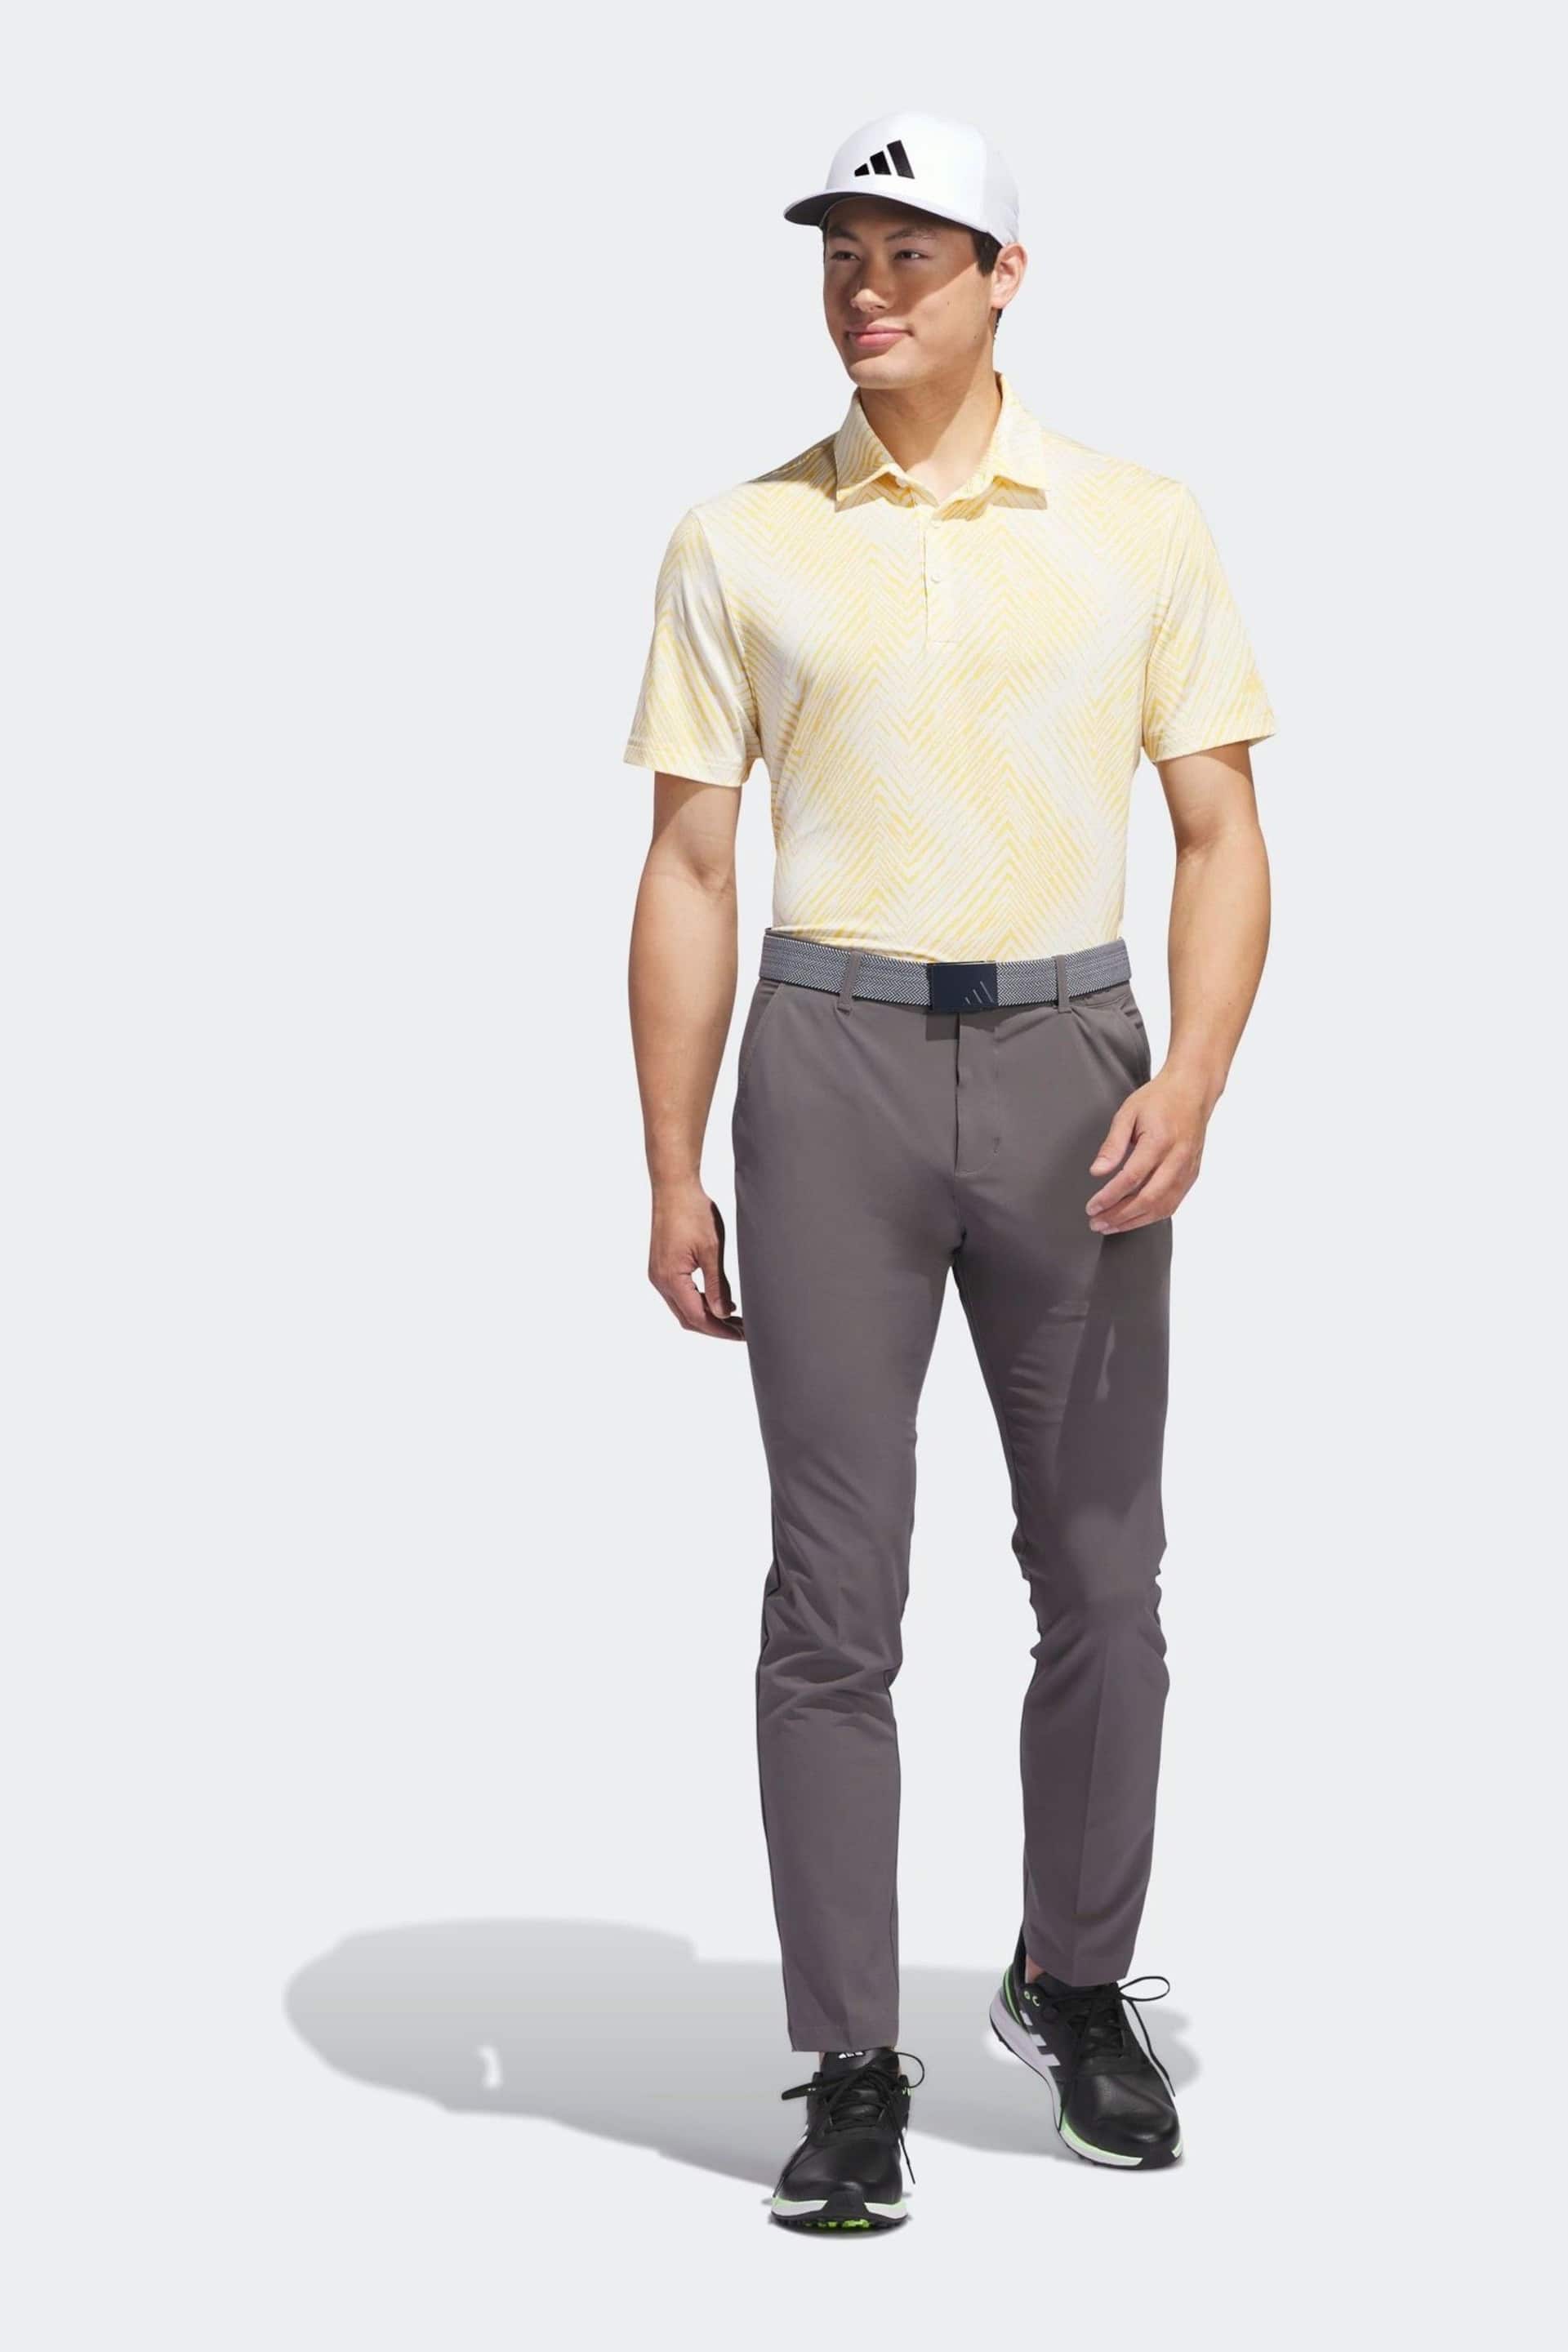 adidas Golf Ultimate 365 All Over Print Polo Shirt - Image 1 of 9